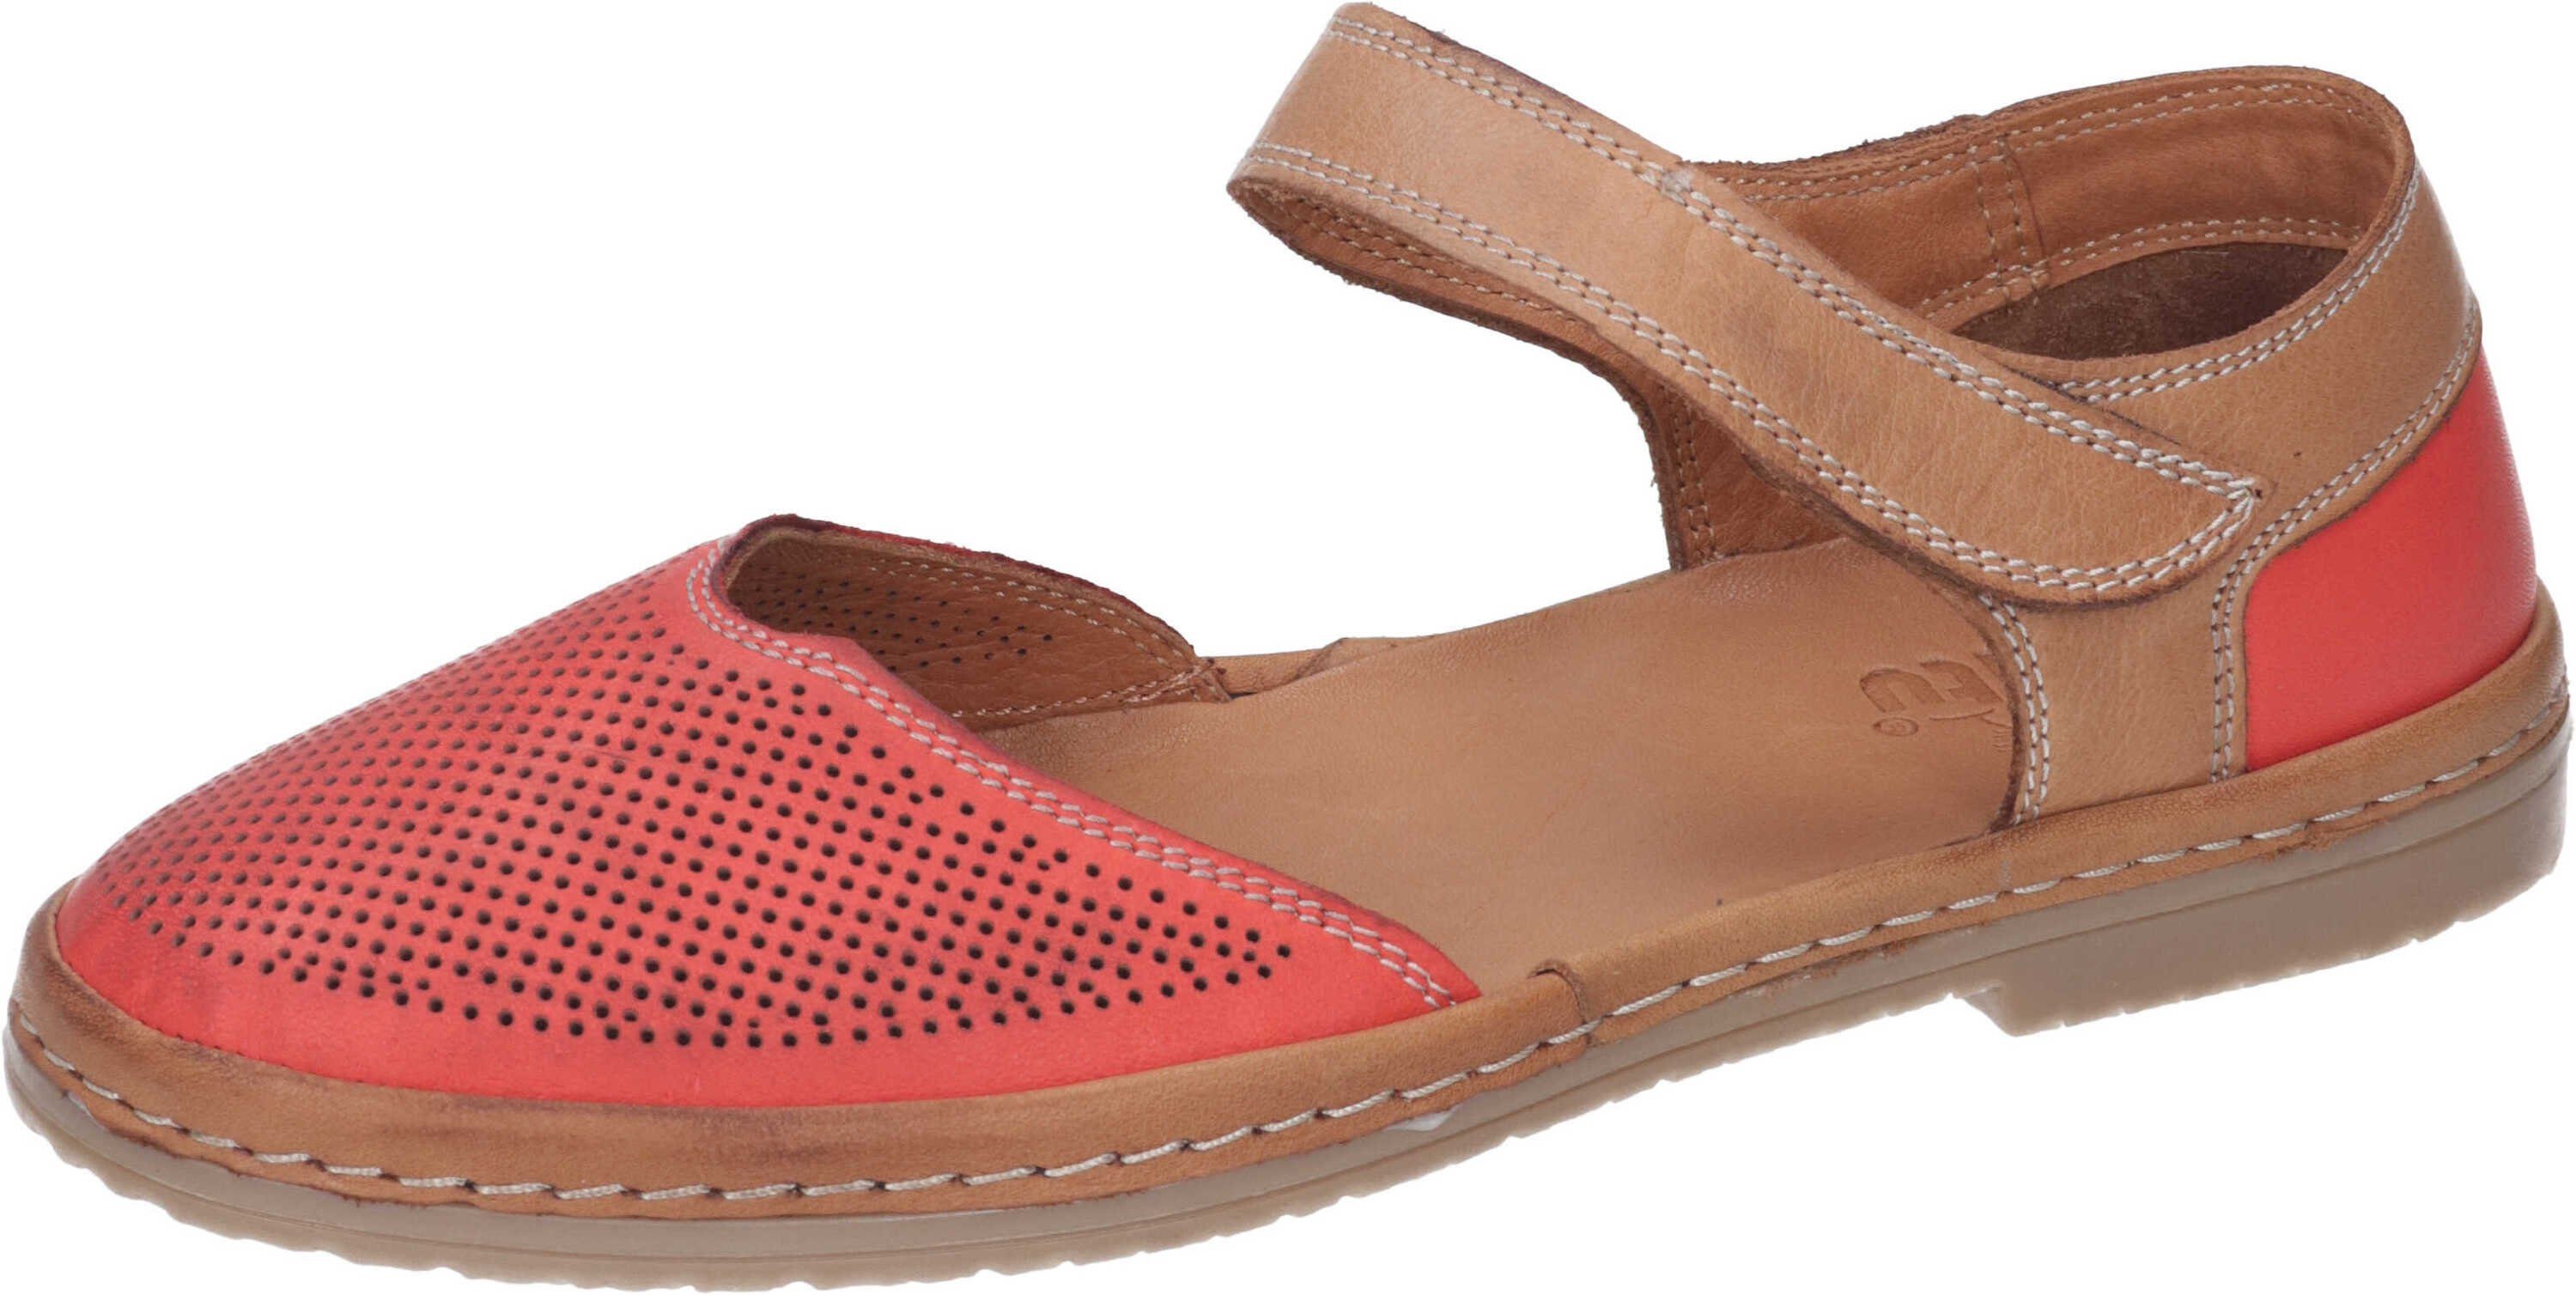 Sandalette Manitu echtem aus Leder rot Sandalen